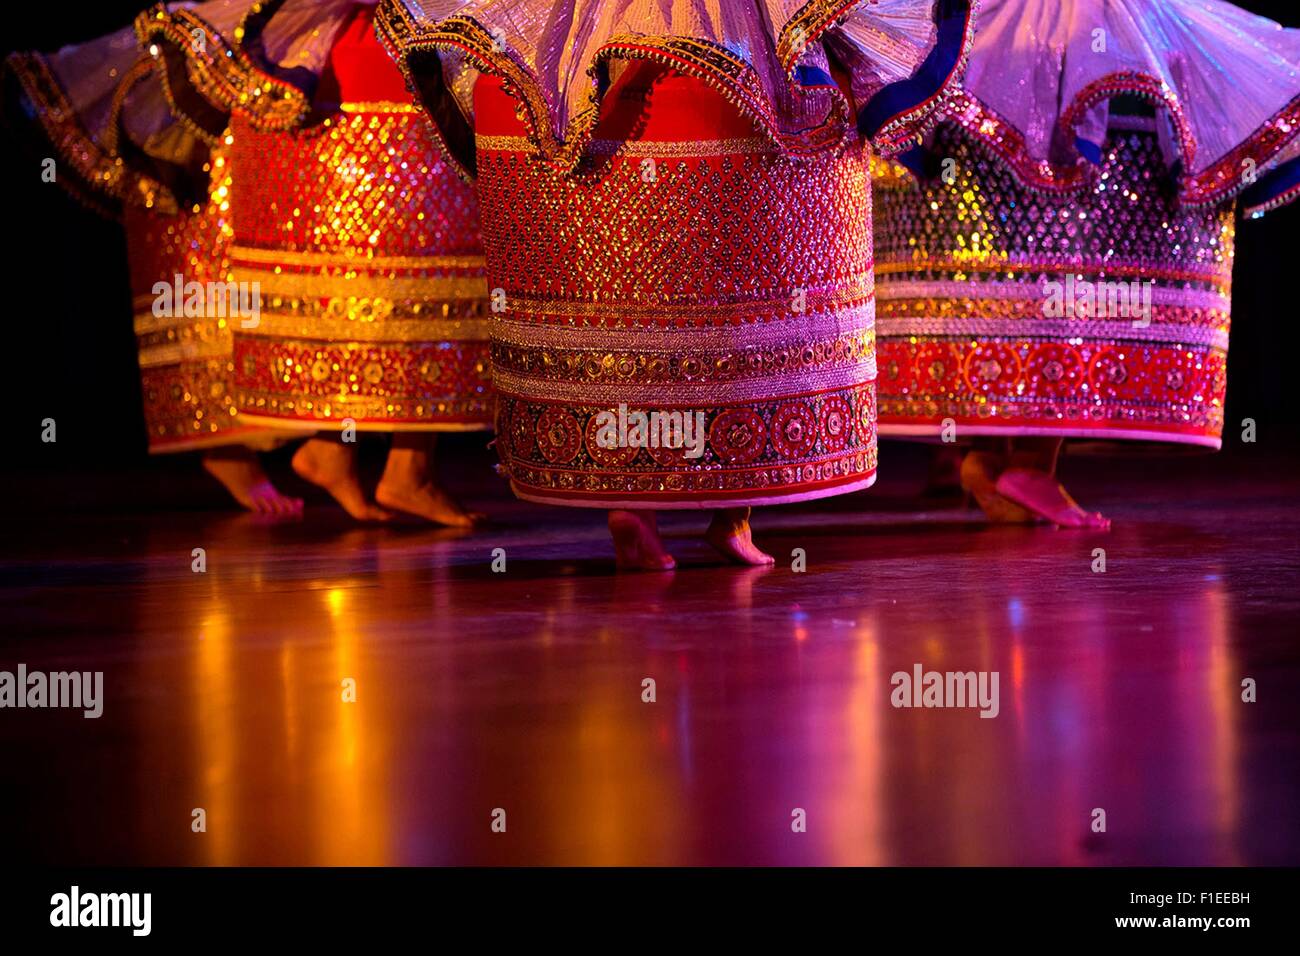 La tradizione indiana ballerini eseguono durante una manifestazione culturale prima di Stato la cena in onore di U.S. Il presidente Barack Obama e la First Lady Michelle Obama a Rashtrapati Bhawan Gennaio 25, 2015 a New Delhi, India. Foto Stock